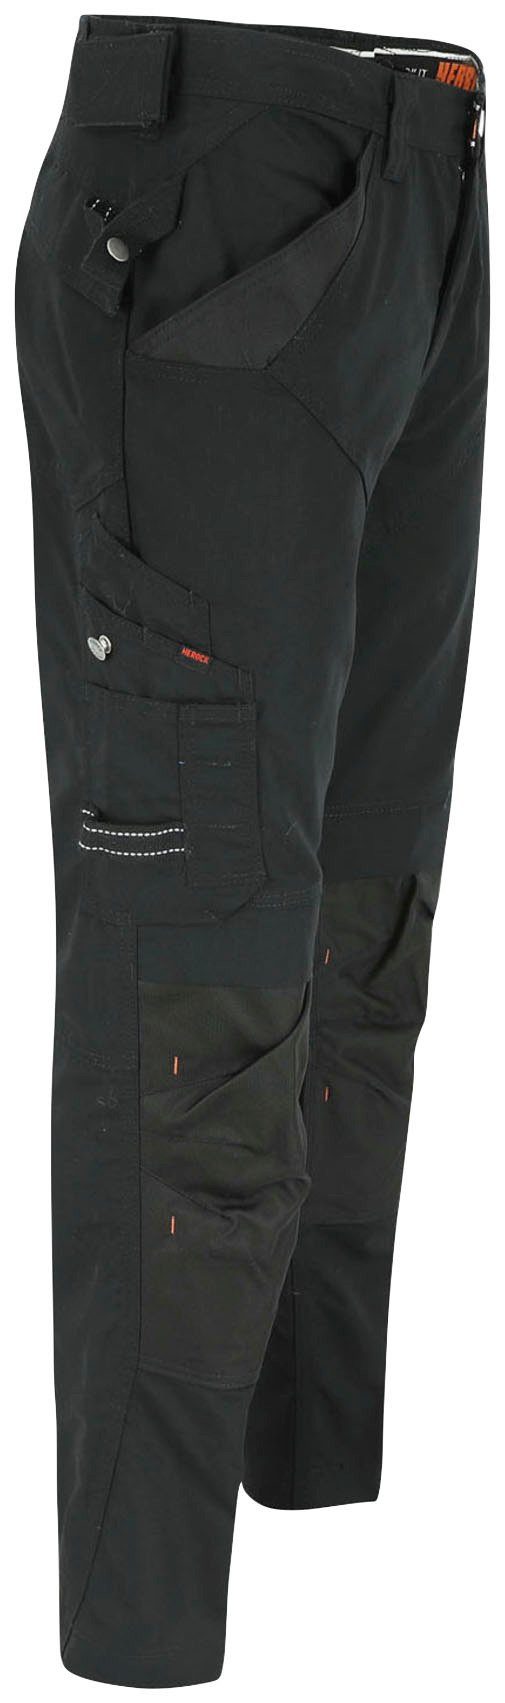 Herock Arbeitshose schwarz bequem - Apollo Hose Taschen - Bund 8 - leicht Regelbarer & Wasserabweisend